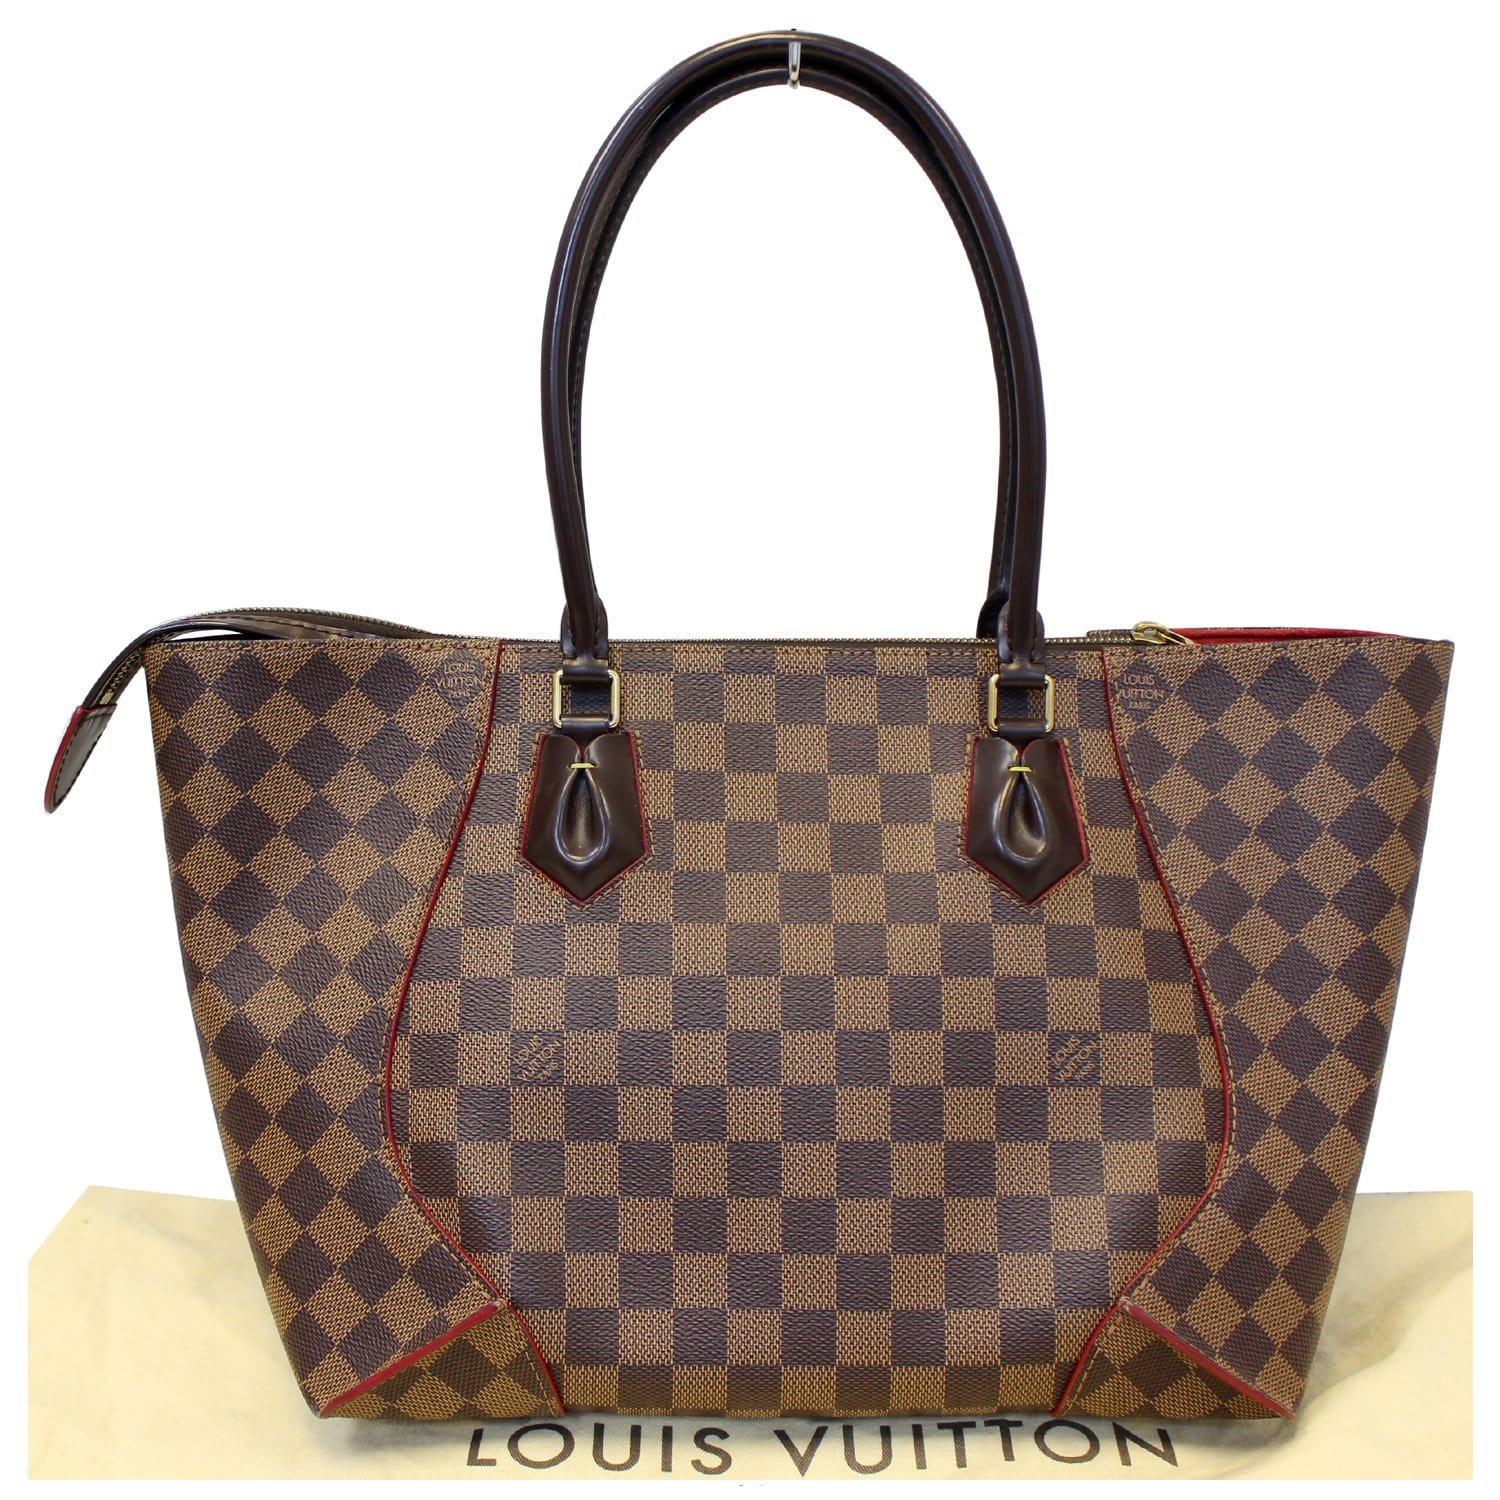 Louis Vuitton Damier Ebene Caissa Tote - Brown Totes, Handbags